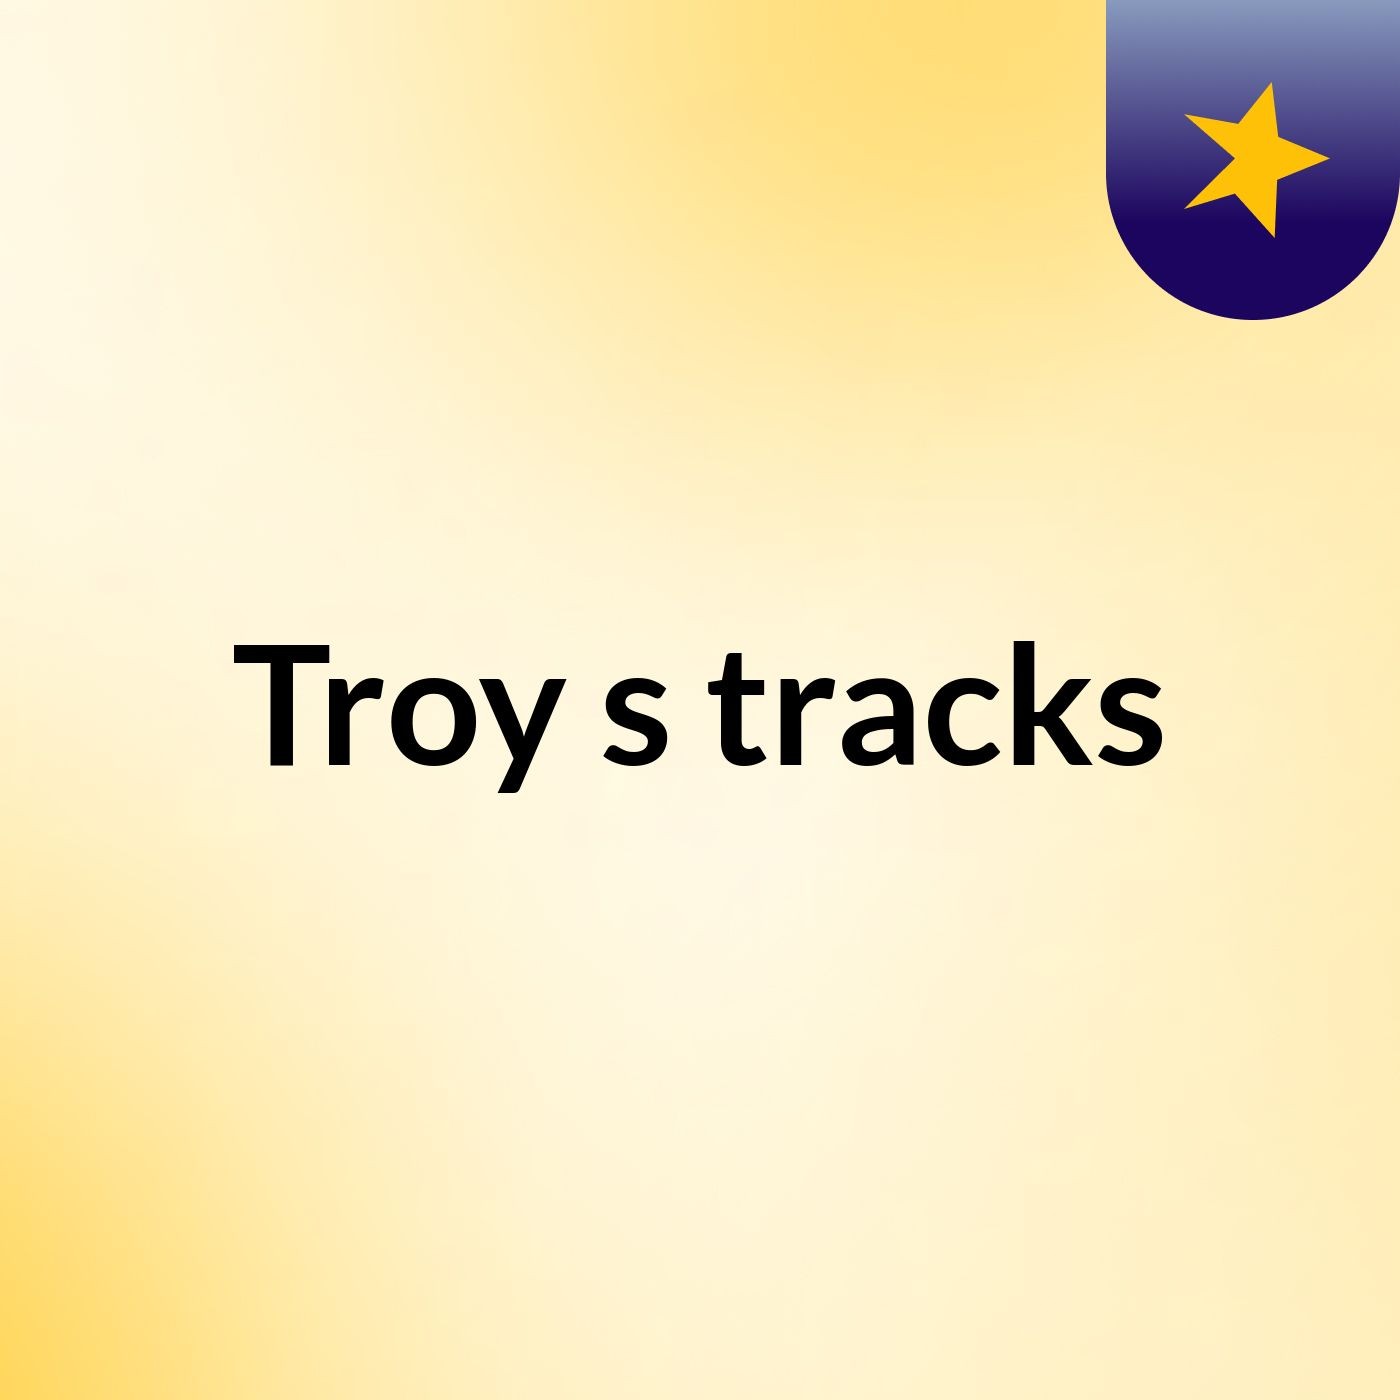 Troy's tracks